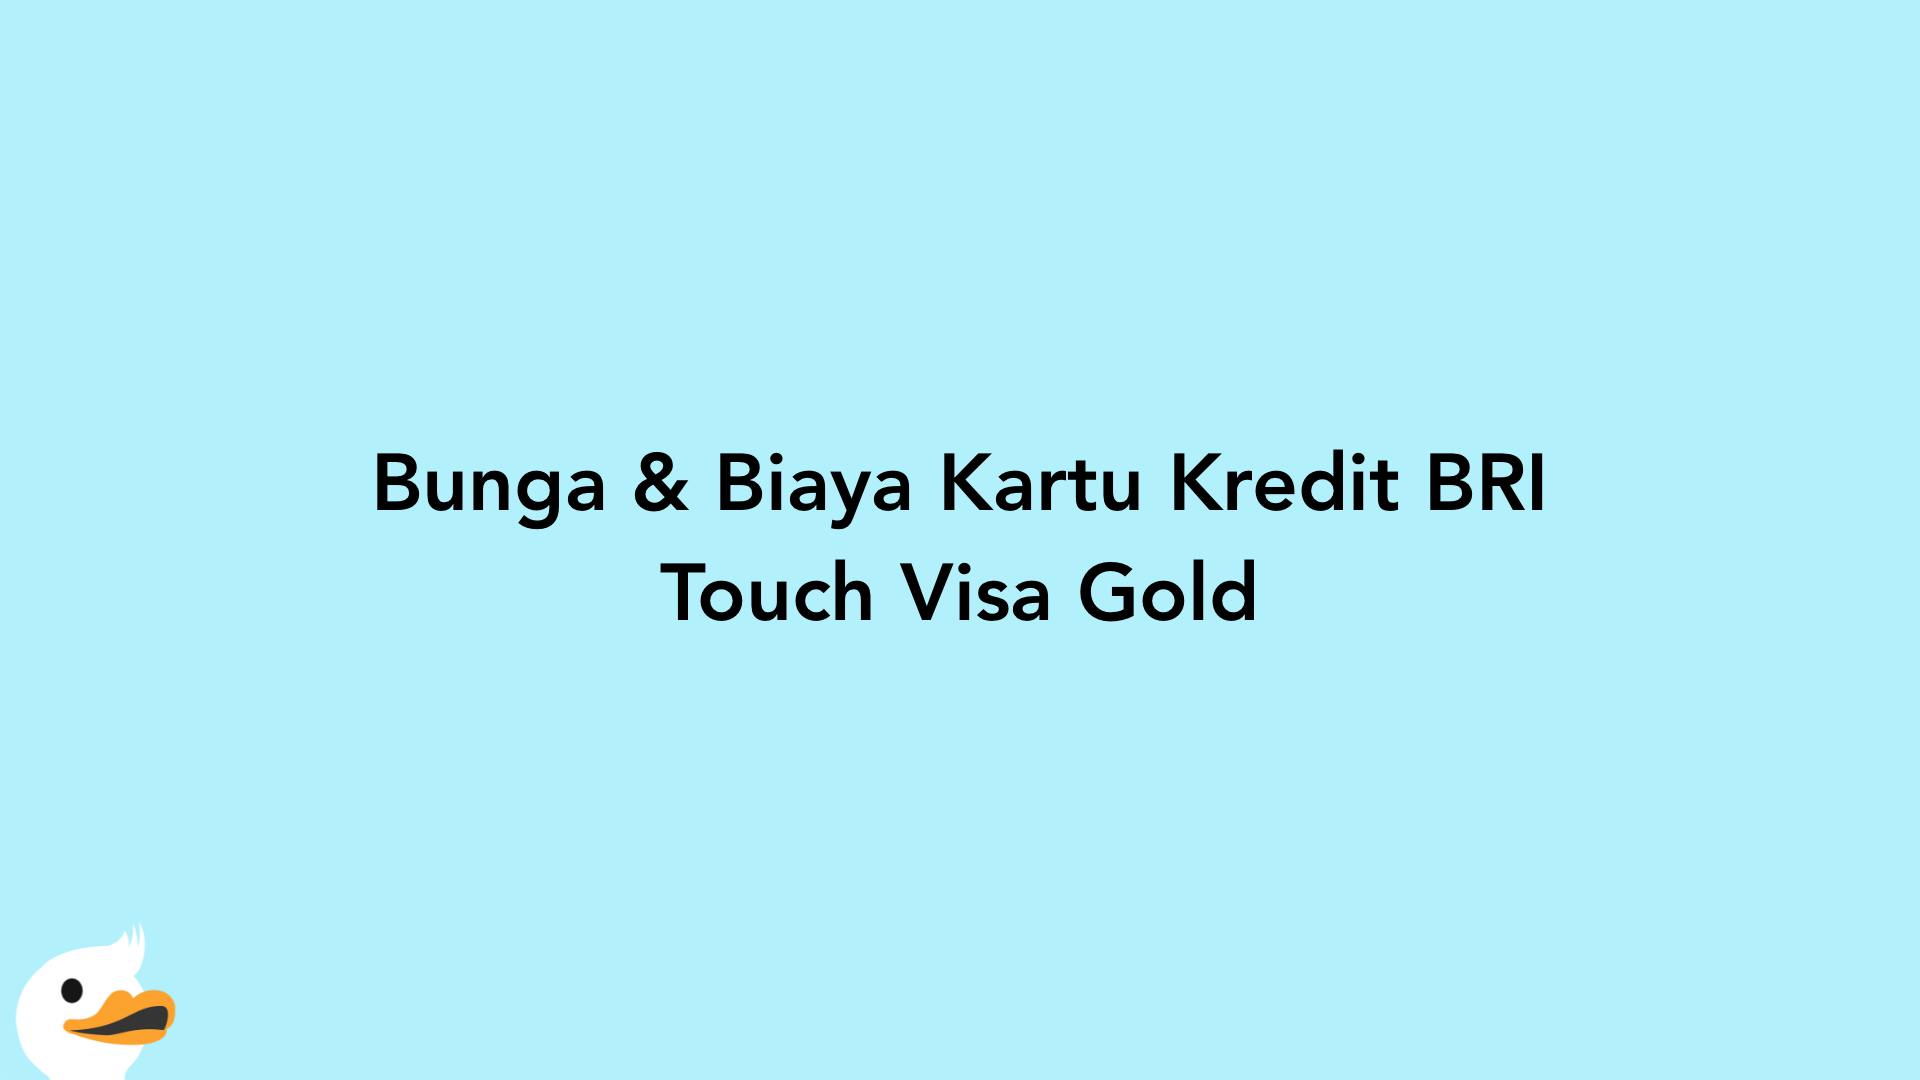 Bunga & Biaya Kartu Kredit BRI Touch Visa Gold